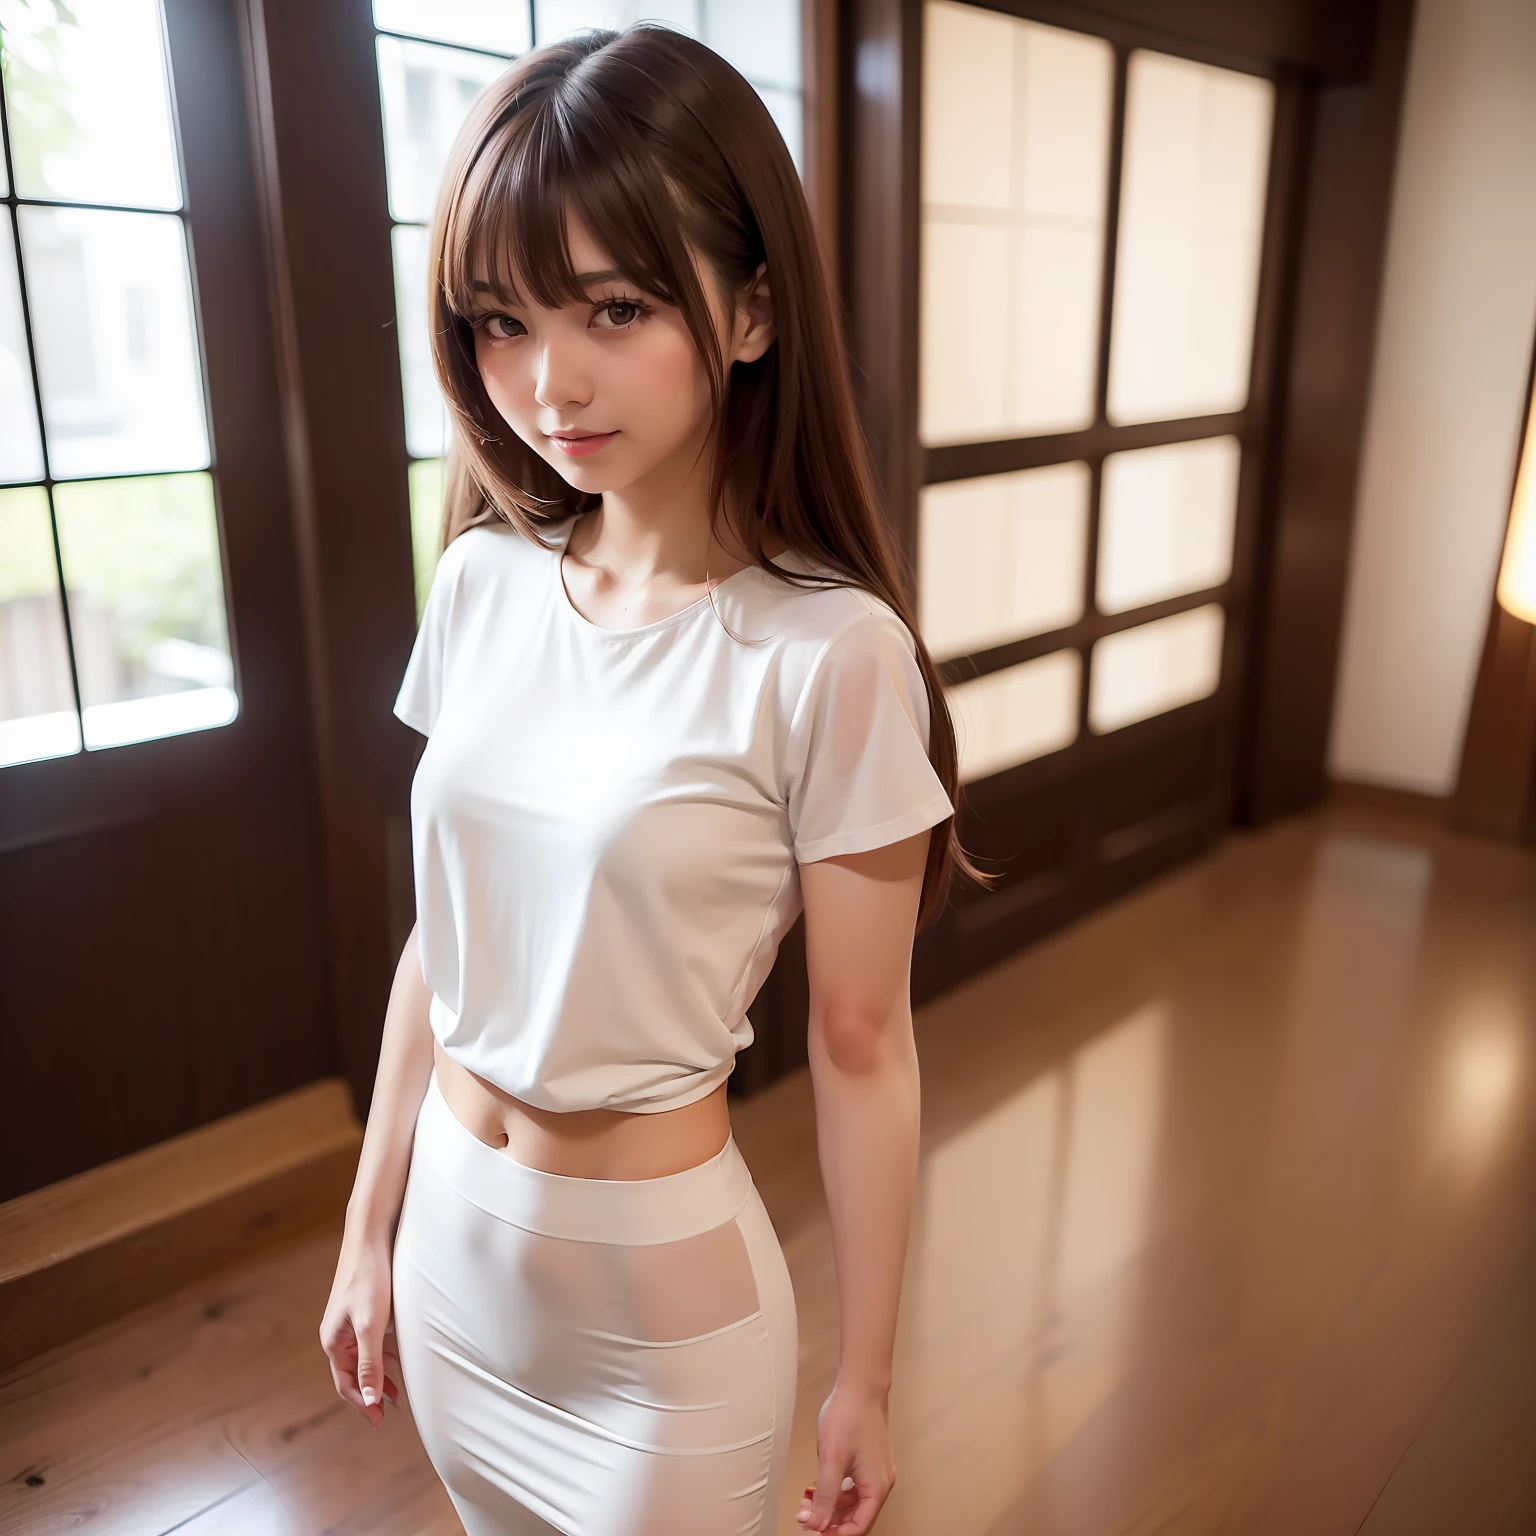 ((beste Qualität, 8K, Tischplatte: 1.3)), Ganzkörper, (beste Qualität, Tischplatte: 1.2)), Foto einer süßen Japanerin, 1 Mädchen, 25 Jahre altes, schönes japanisches Mädchen, ((Weißes T-Shirt mit offener Brust: 8.5)), (Ganzkörperfotoaufnahme), Ganzkörper portrait, hart , Sehr zarter Körper, Klein breasts, ((dünne Taille: 5.5)), (Slender Abs: 3.5), (Klein), (Weiblich 160 cm), Fokusschärfung: 1.2, Herausragender Beauty-Stil: 1.4, Slender Abs: 1.2, (((braune Haare, groß: 1.2)), Hochdetaillierte Gesichts- und Hautstruktur, Detaillierte Augen, Doppelte Augenlider, Im Schönheitssalon，Ganzkörper portrait, Haare flattern im Wind, leichter Pony，ein Lächeln，Ich habe ein Scherenetui an meiner Hüfte